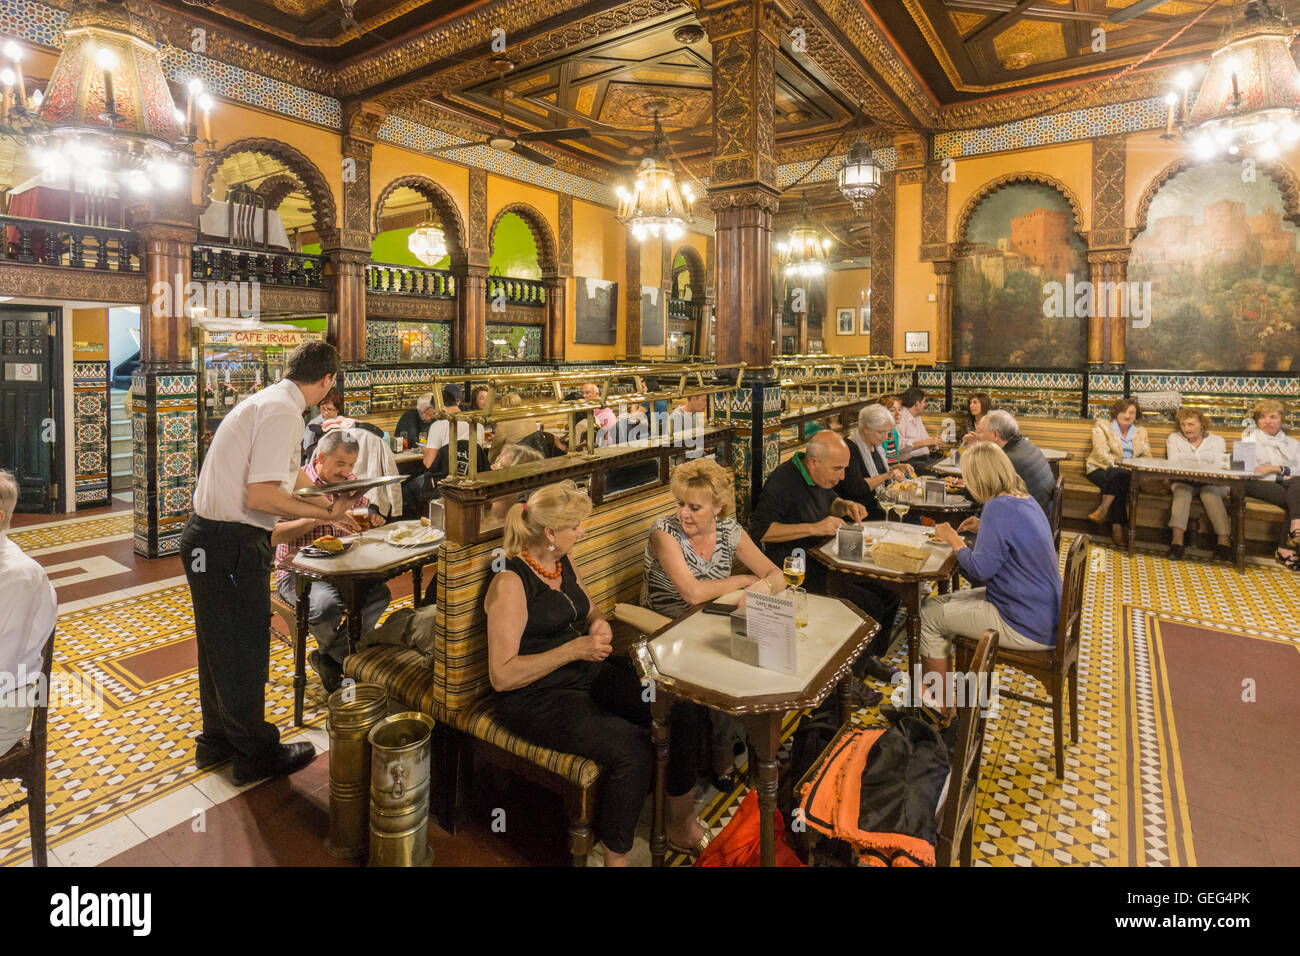 Intérieur de la Café Iruna historique fondé en 1903, Bilbao, Pays Basque, Espagne Banque D'Images